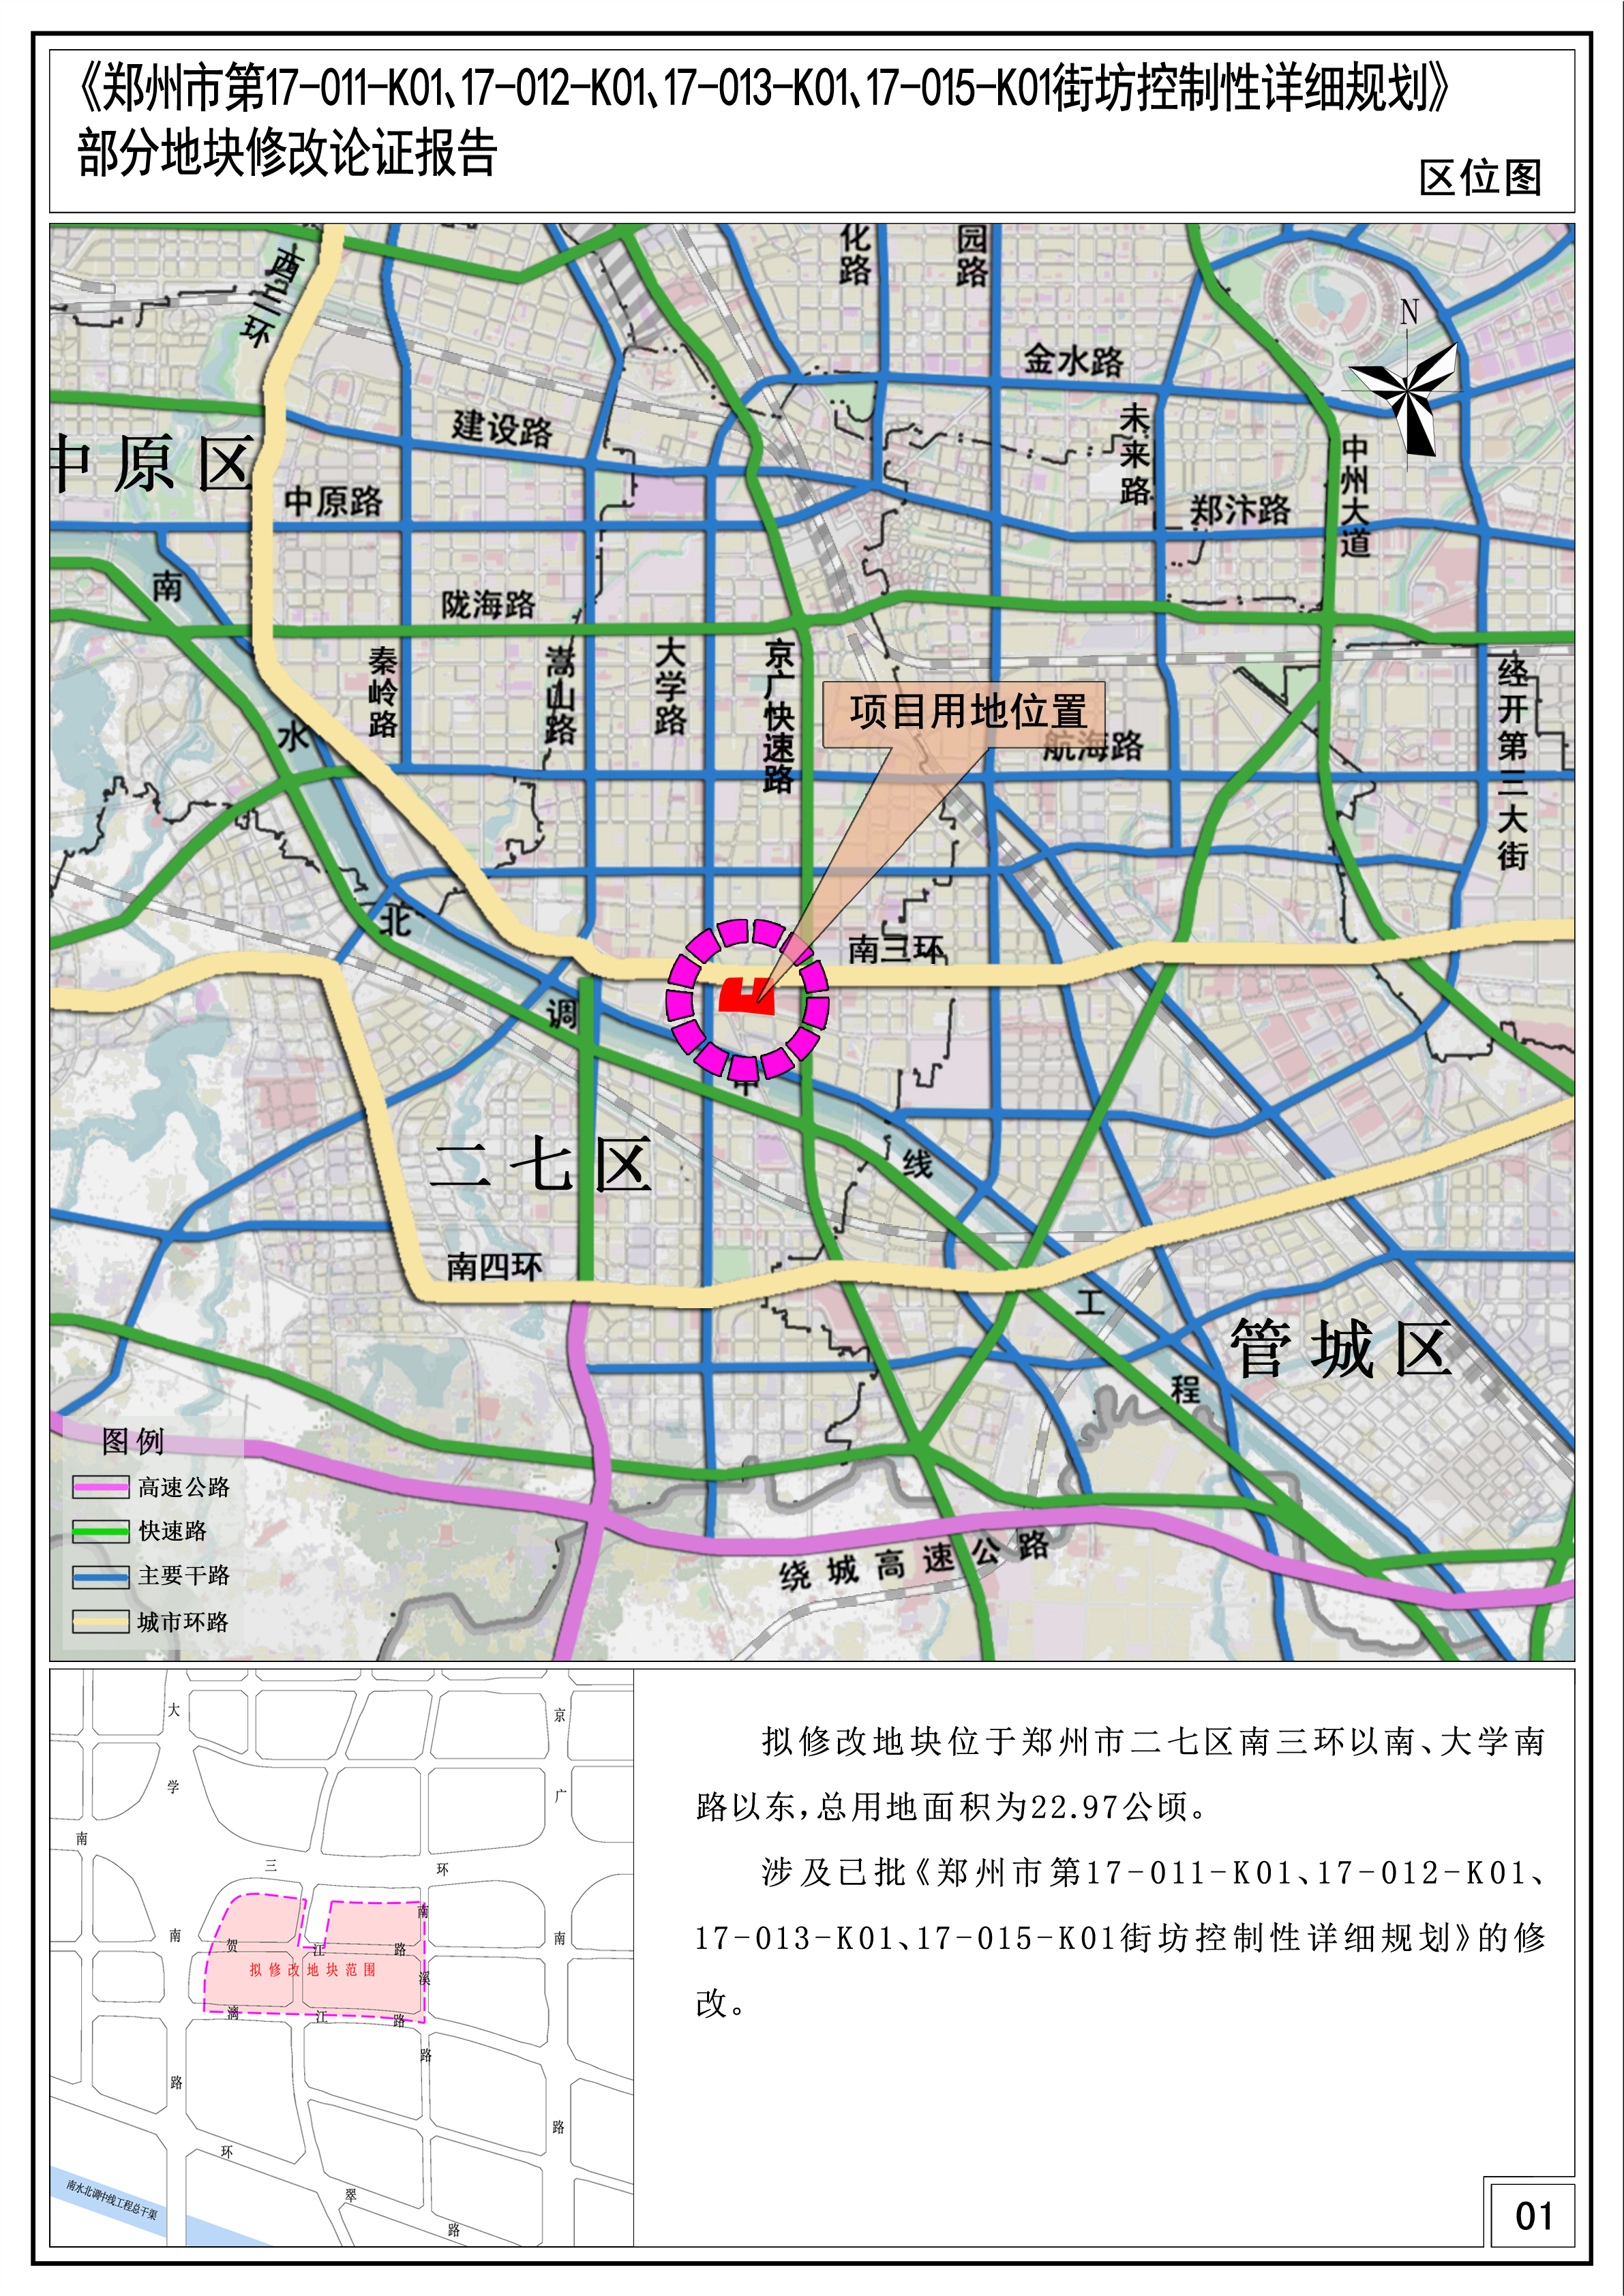 《郑州市第17-011-K01、17-012-K01、17-013-K01、17-015-K01街坊控制性详细规划》部分地块修改论证报告